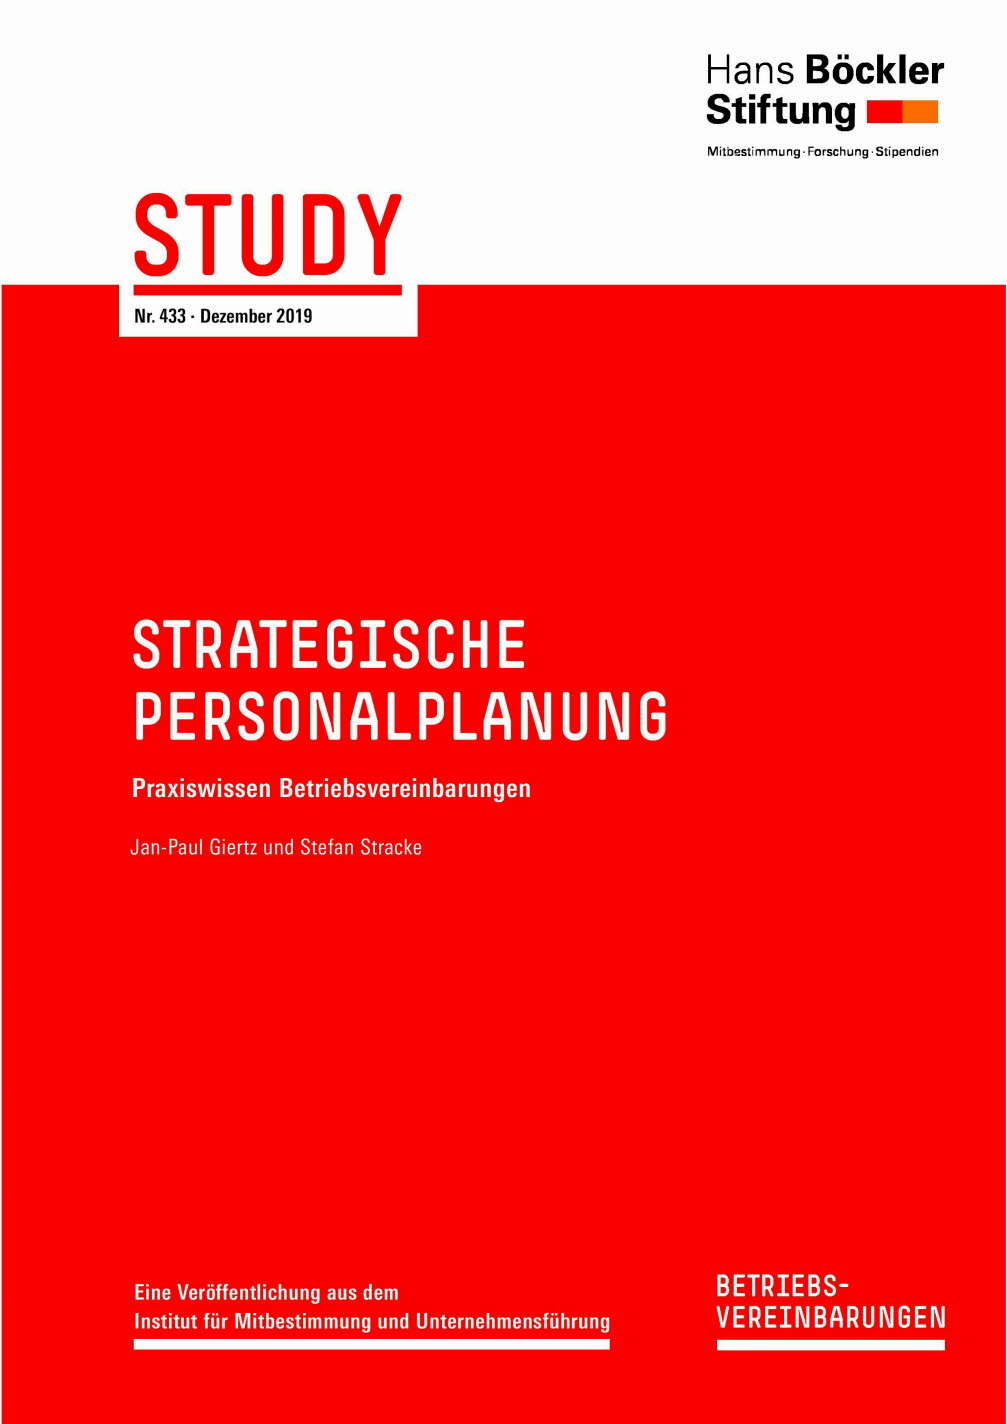 Strategische Personalplanung